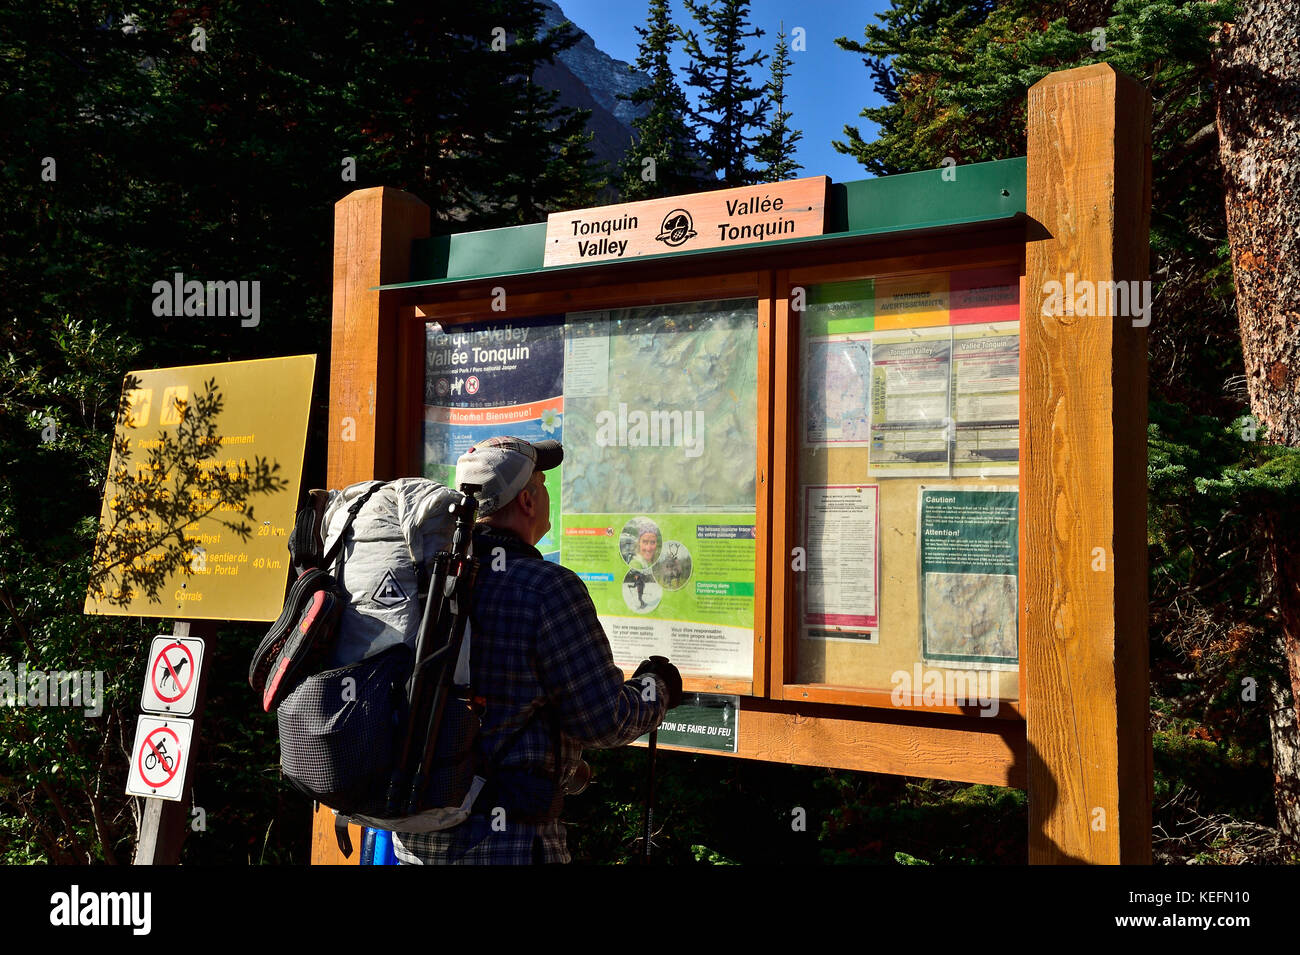 Un maschio adulto escursionista verificando le informazioni mappa prima di iniziare un'escursione al remoto Tonquin Valley nel Parco Nazionale di Jasper, Alberta, Canada. Foto Stock